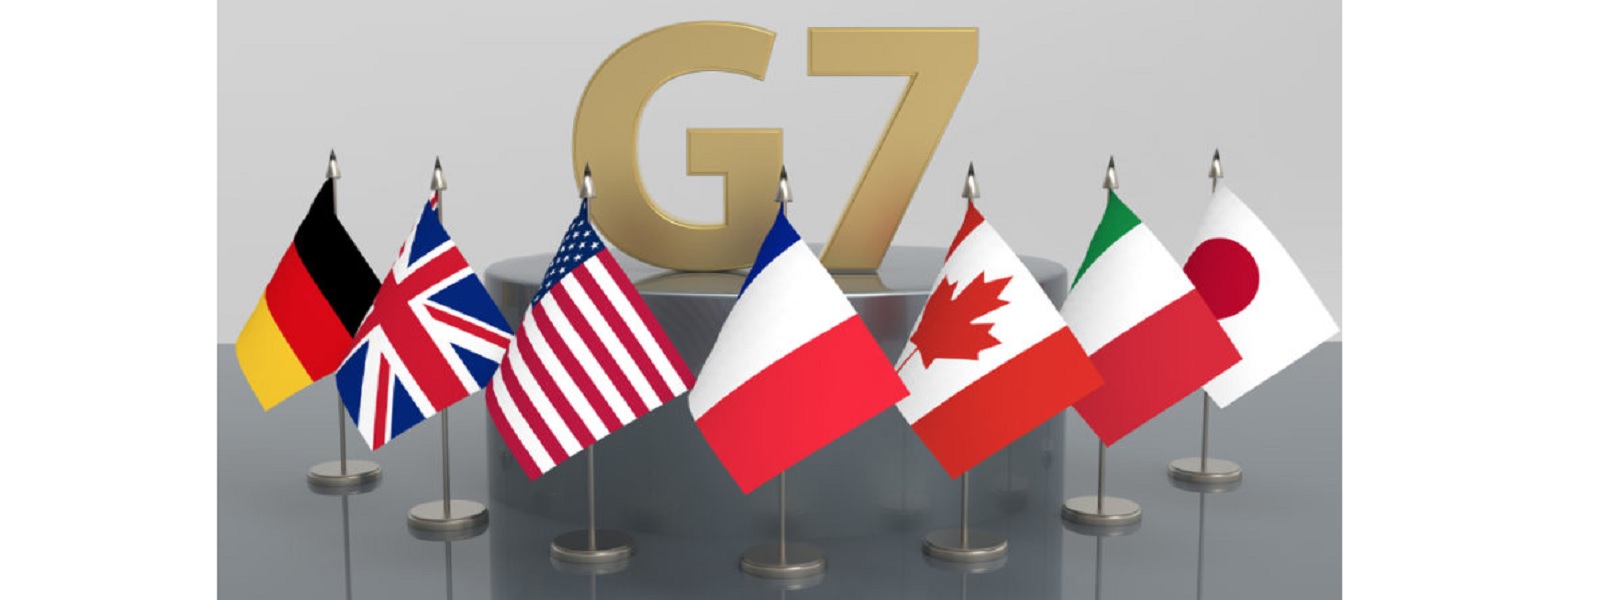 இலங்கைக்கு கடன் சலுகை வழங்கவுள்ள G7 நாடுகள்